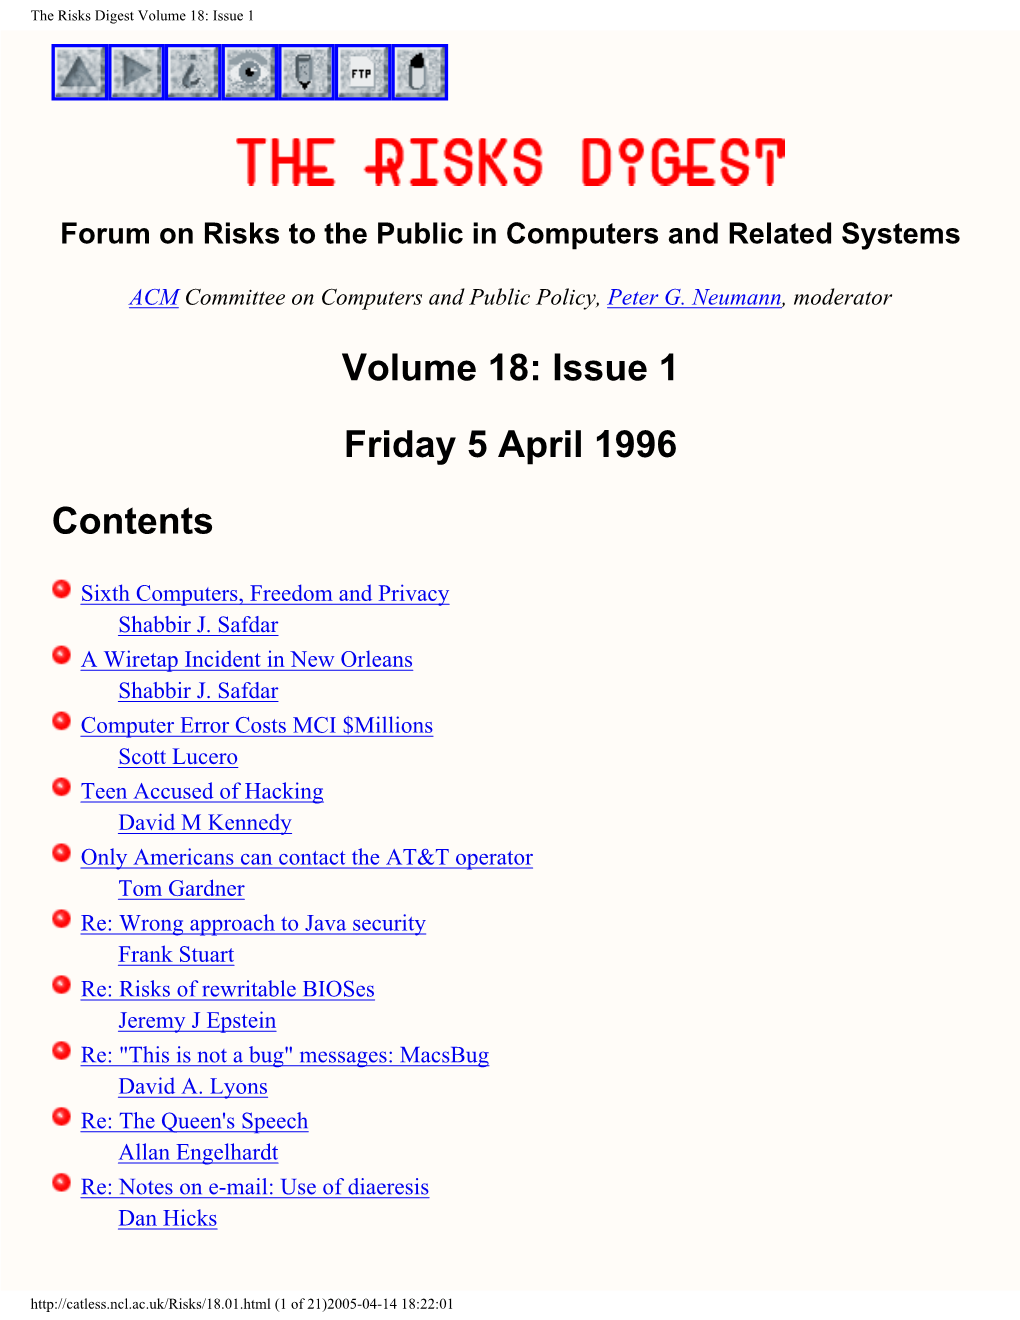 RISKS Volume 18